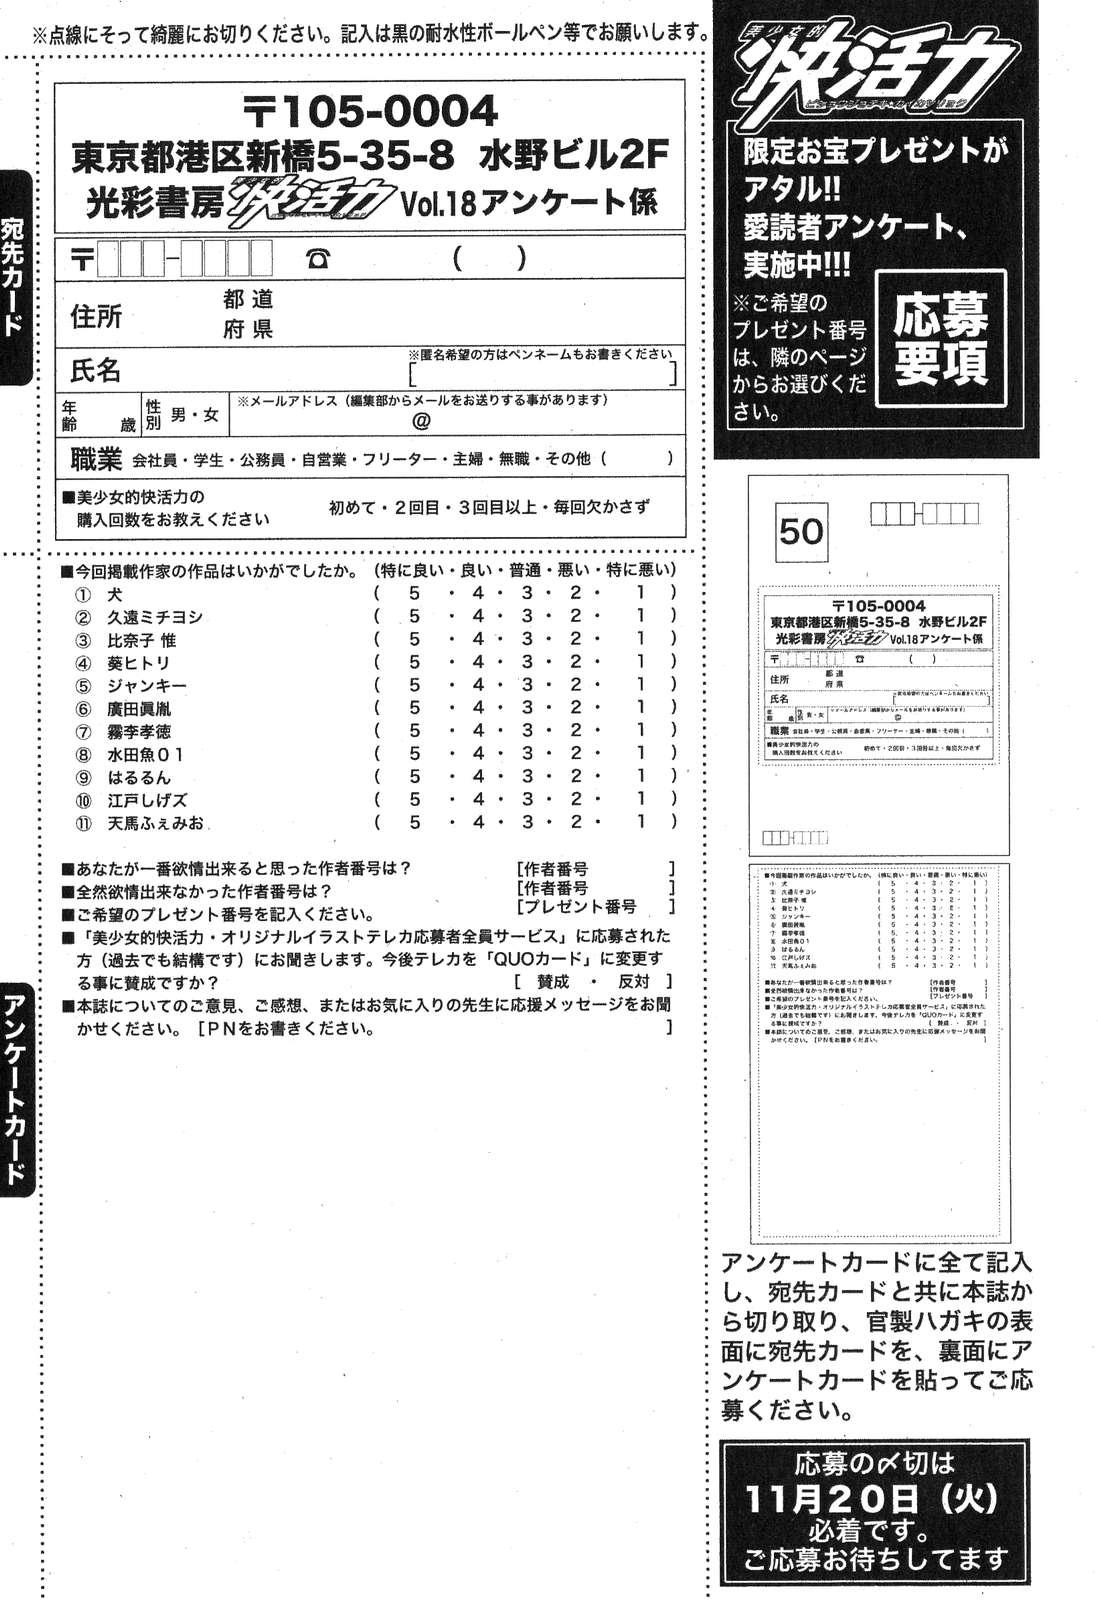 Bishoujo Teki Kaikatsu Ryoku 2007 Vol.18 192